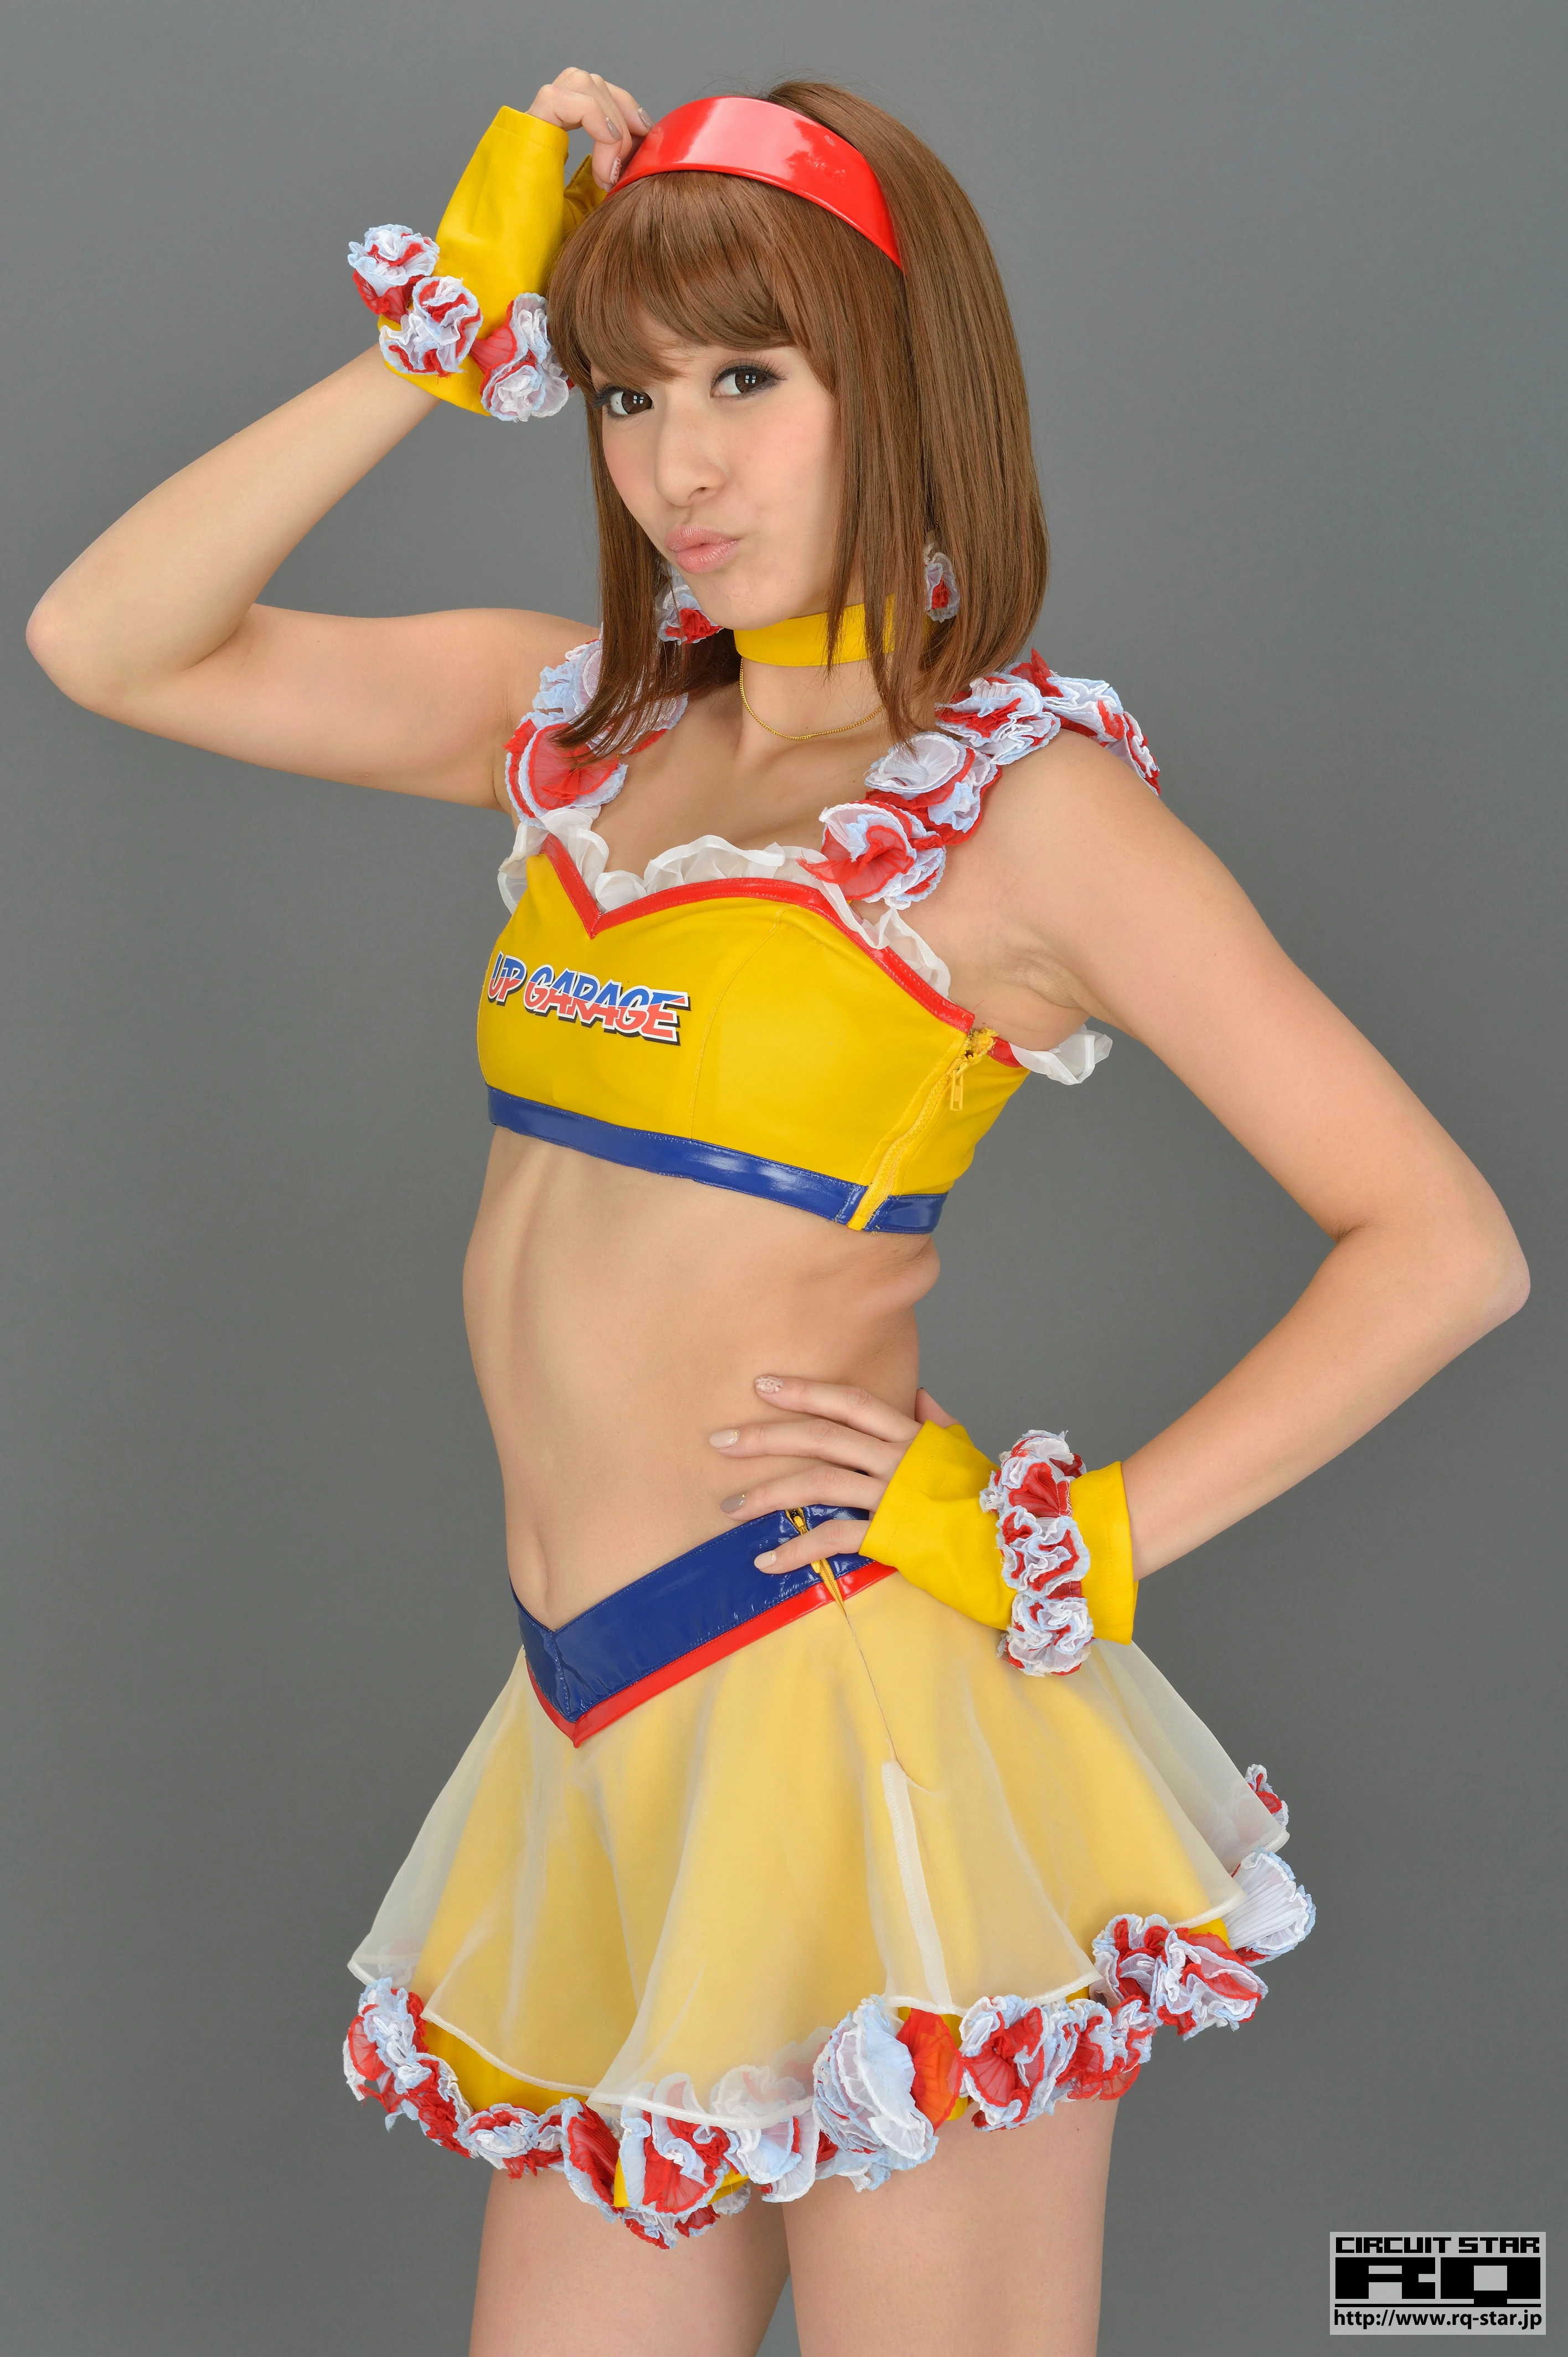 [RQ-STAR写真]NO.00733 日本赛车女郎 しばはらまい（柴原麻衣，Mai Shibahara）黄色制服加短裙性感写真集,018